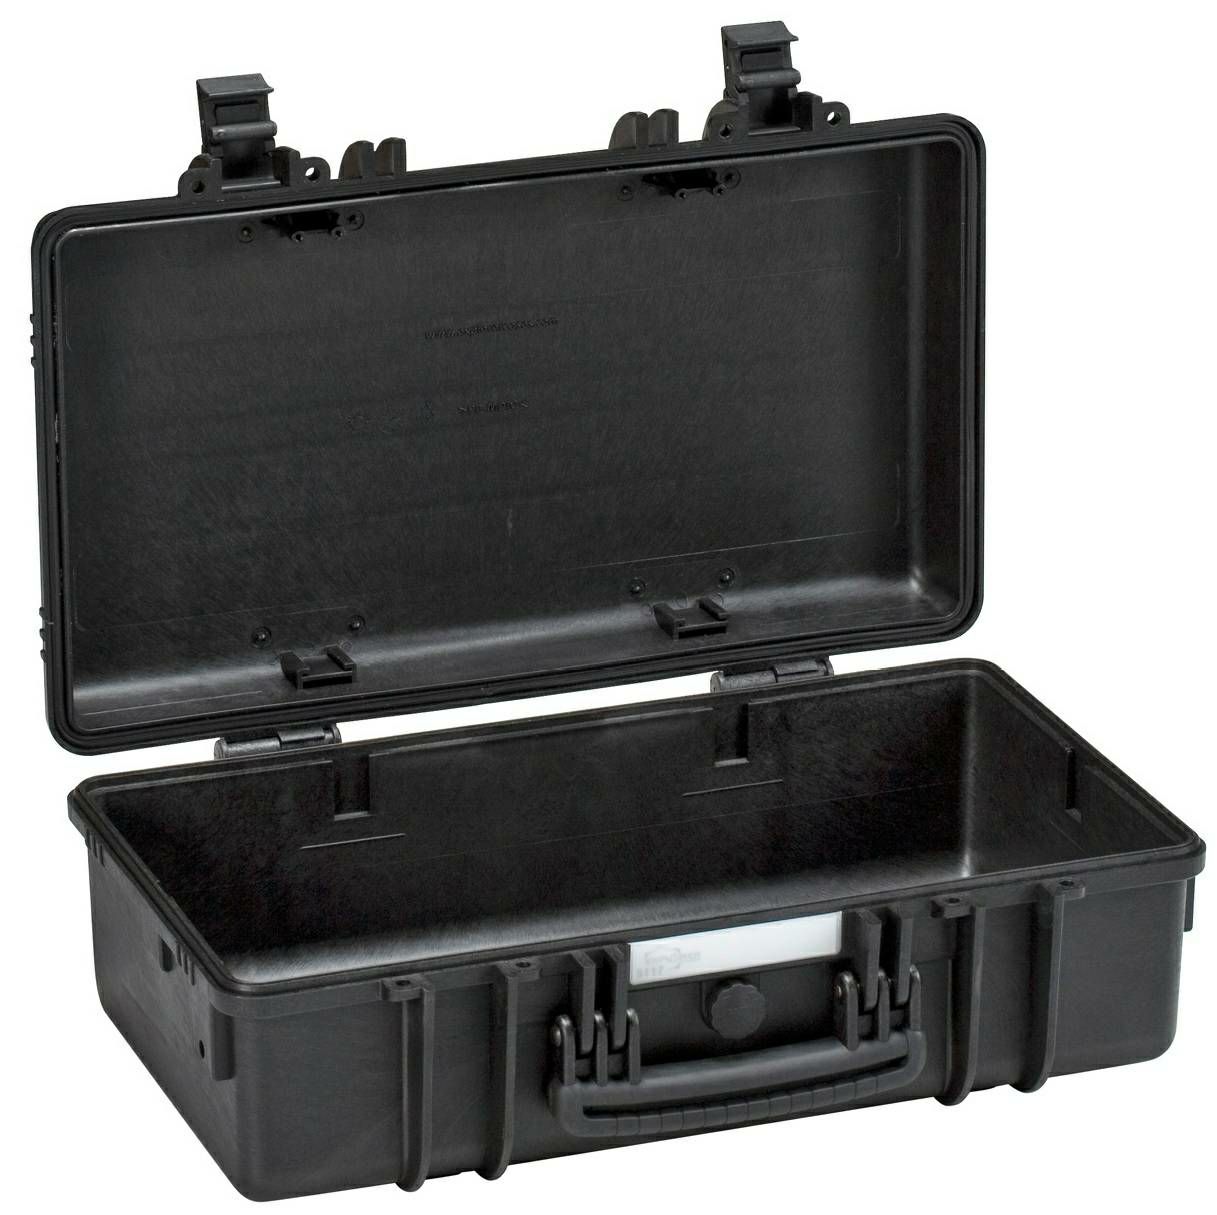 Explorer Cases 5117 Black Foam 546x347x197mm kufer za foto opremu kofer Camera Case